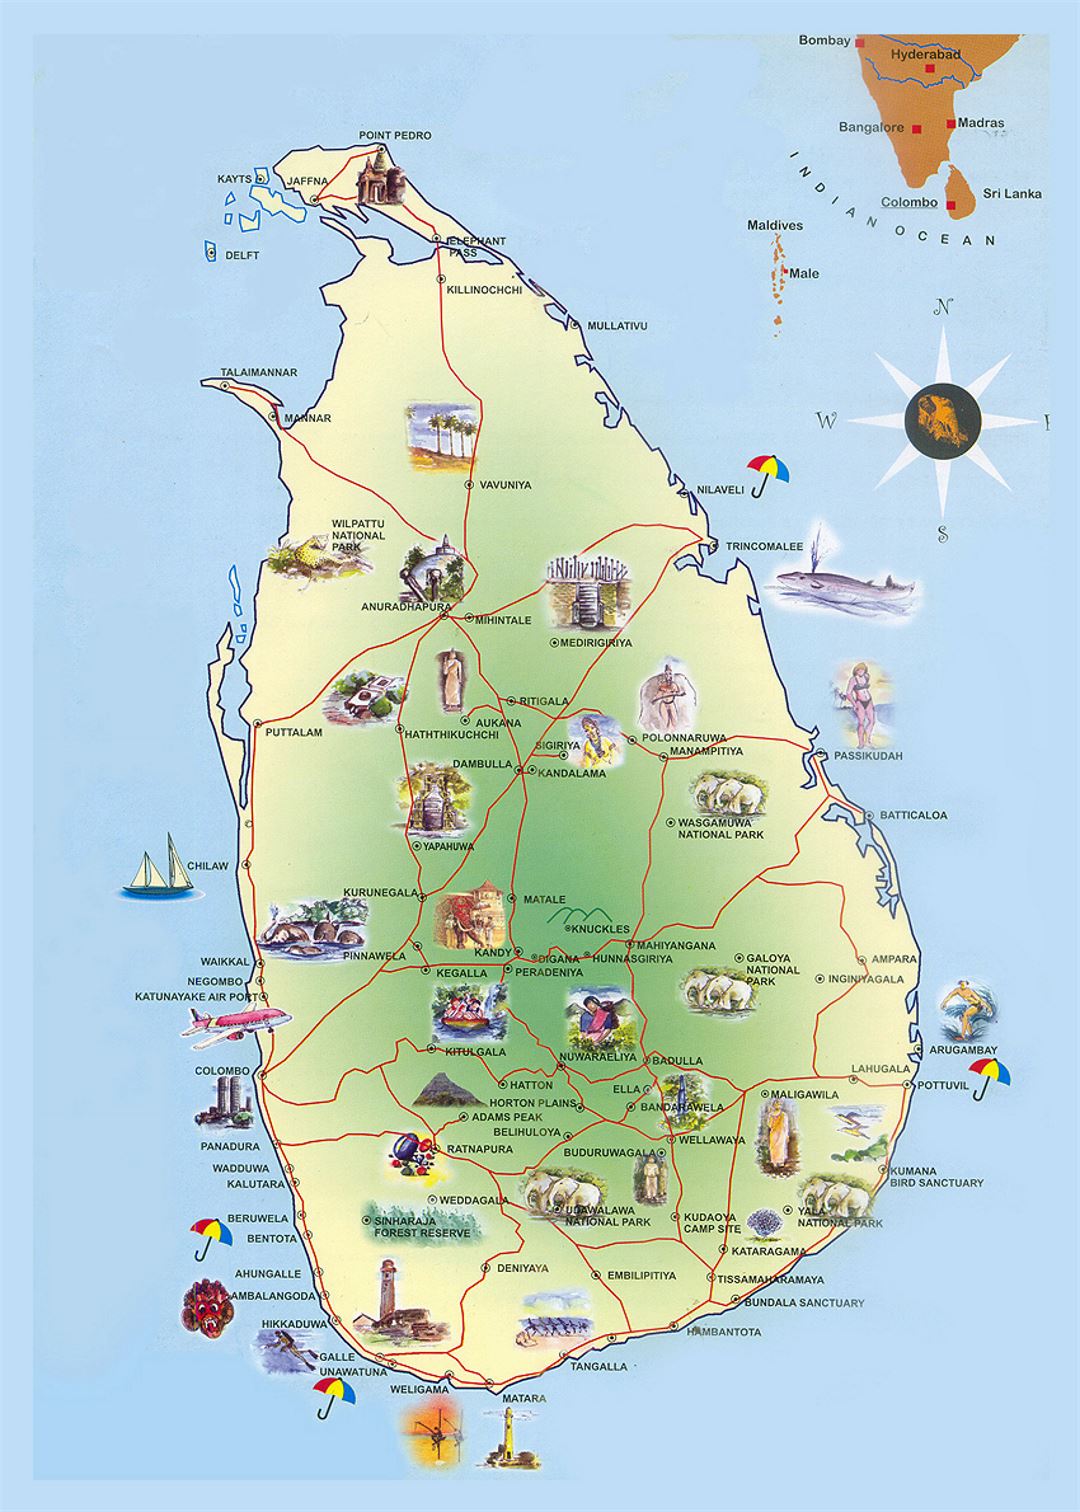 Detailed travel map of Sri Lanka